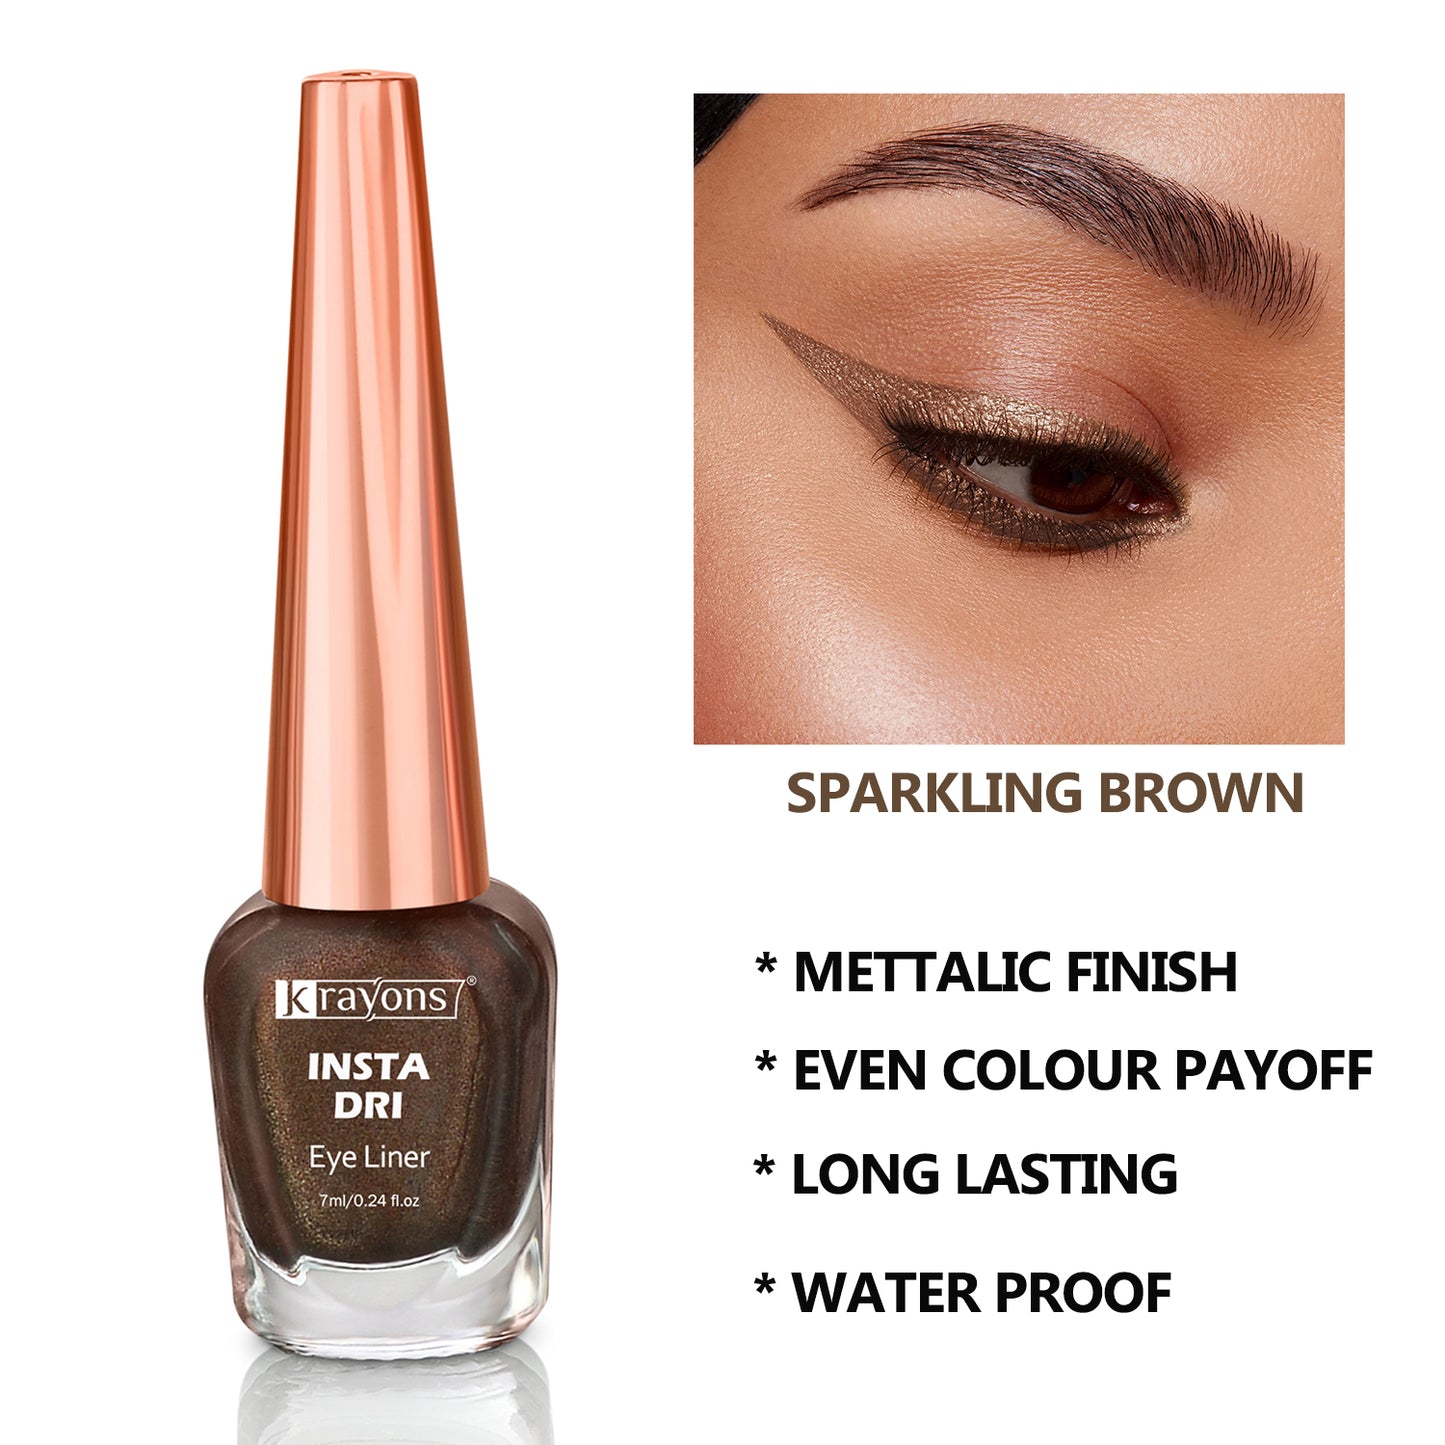 Krayons Insta Dri Sparkling Eyeliner, Black, Brown, Waterproof, Longlasting, 7ml Each, Combo (Pack of 2)